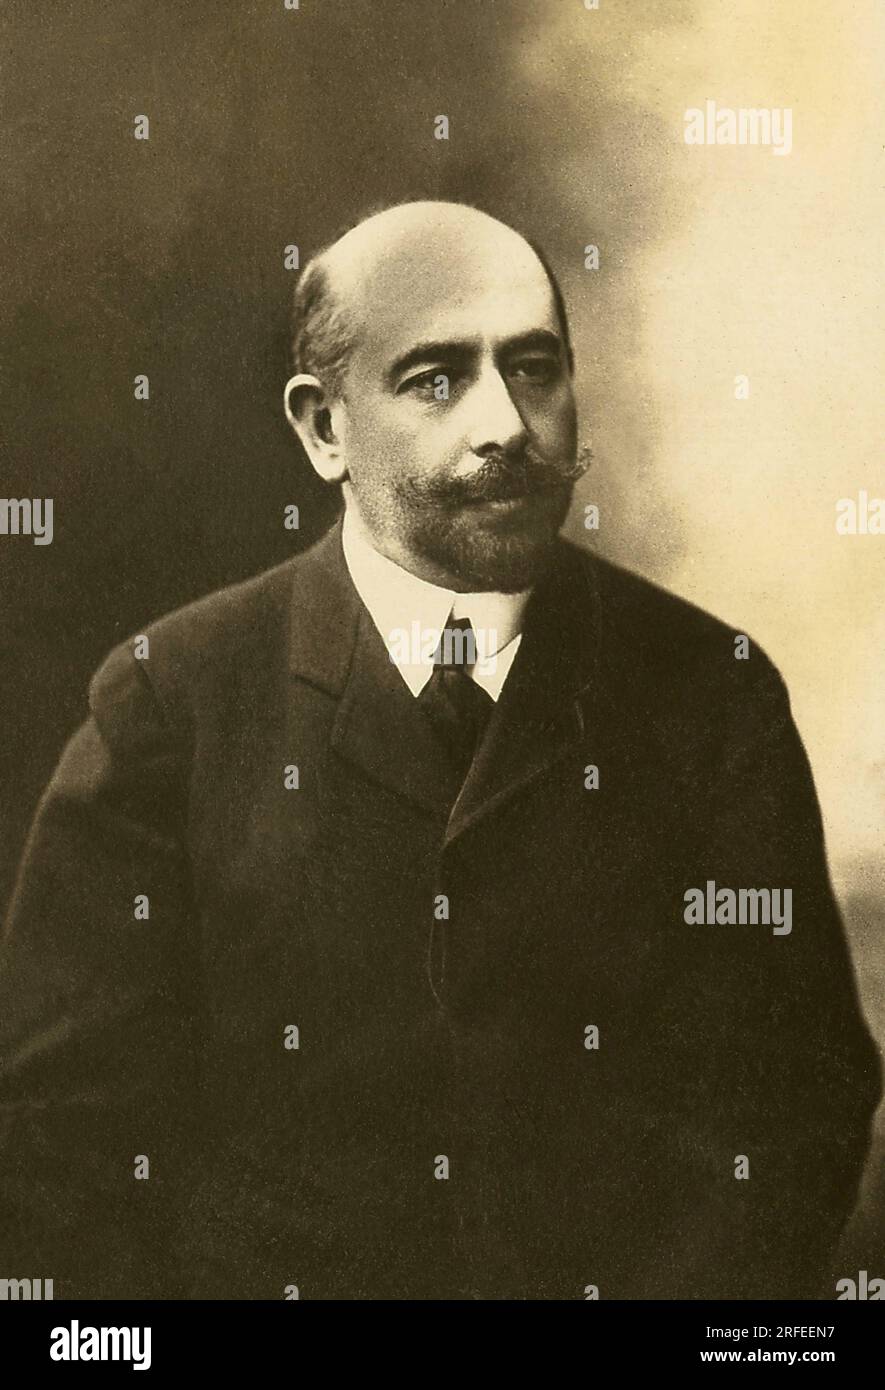 Portrait de Alfred Capus (1857-1922), auteur dramatique, journaliste et essayiste Francais. Fotografie, Debüt du 20e siècle, Paris. Stockfoto